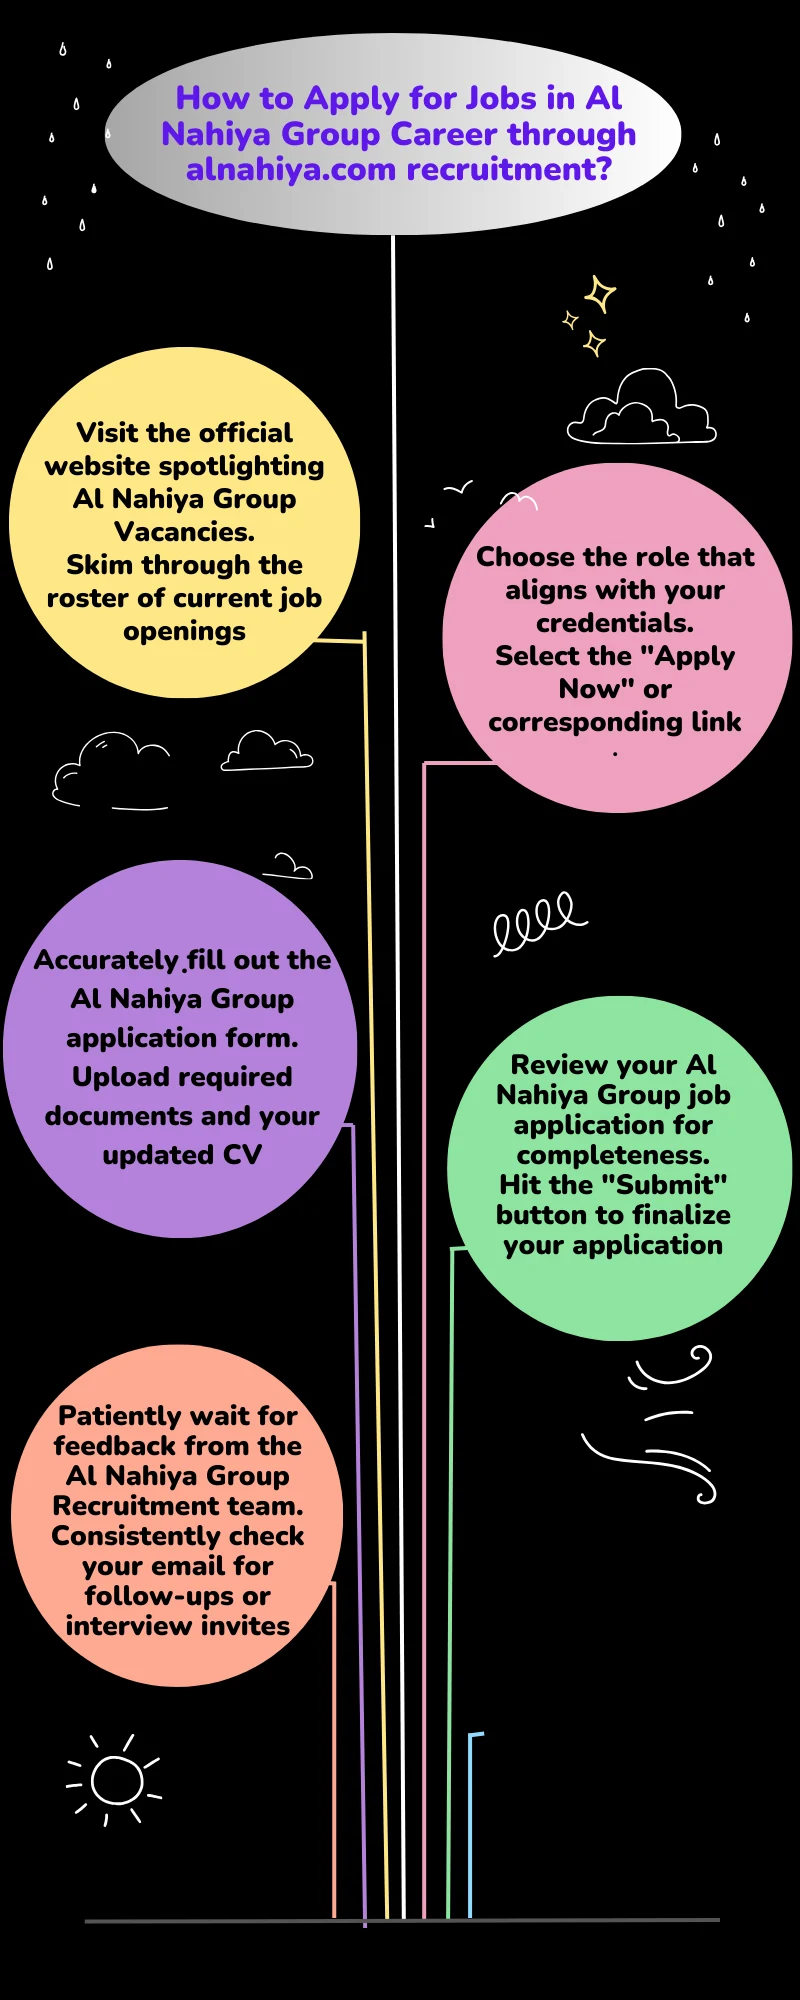 How to Apply for Jobs in Al Nahiya Group Career through alnahiya.com recruitment?